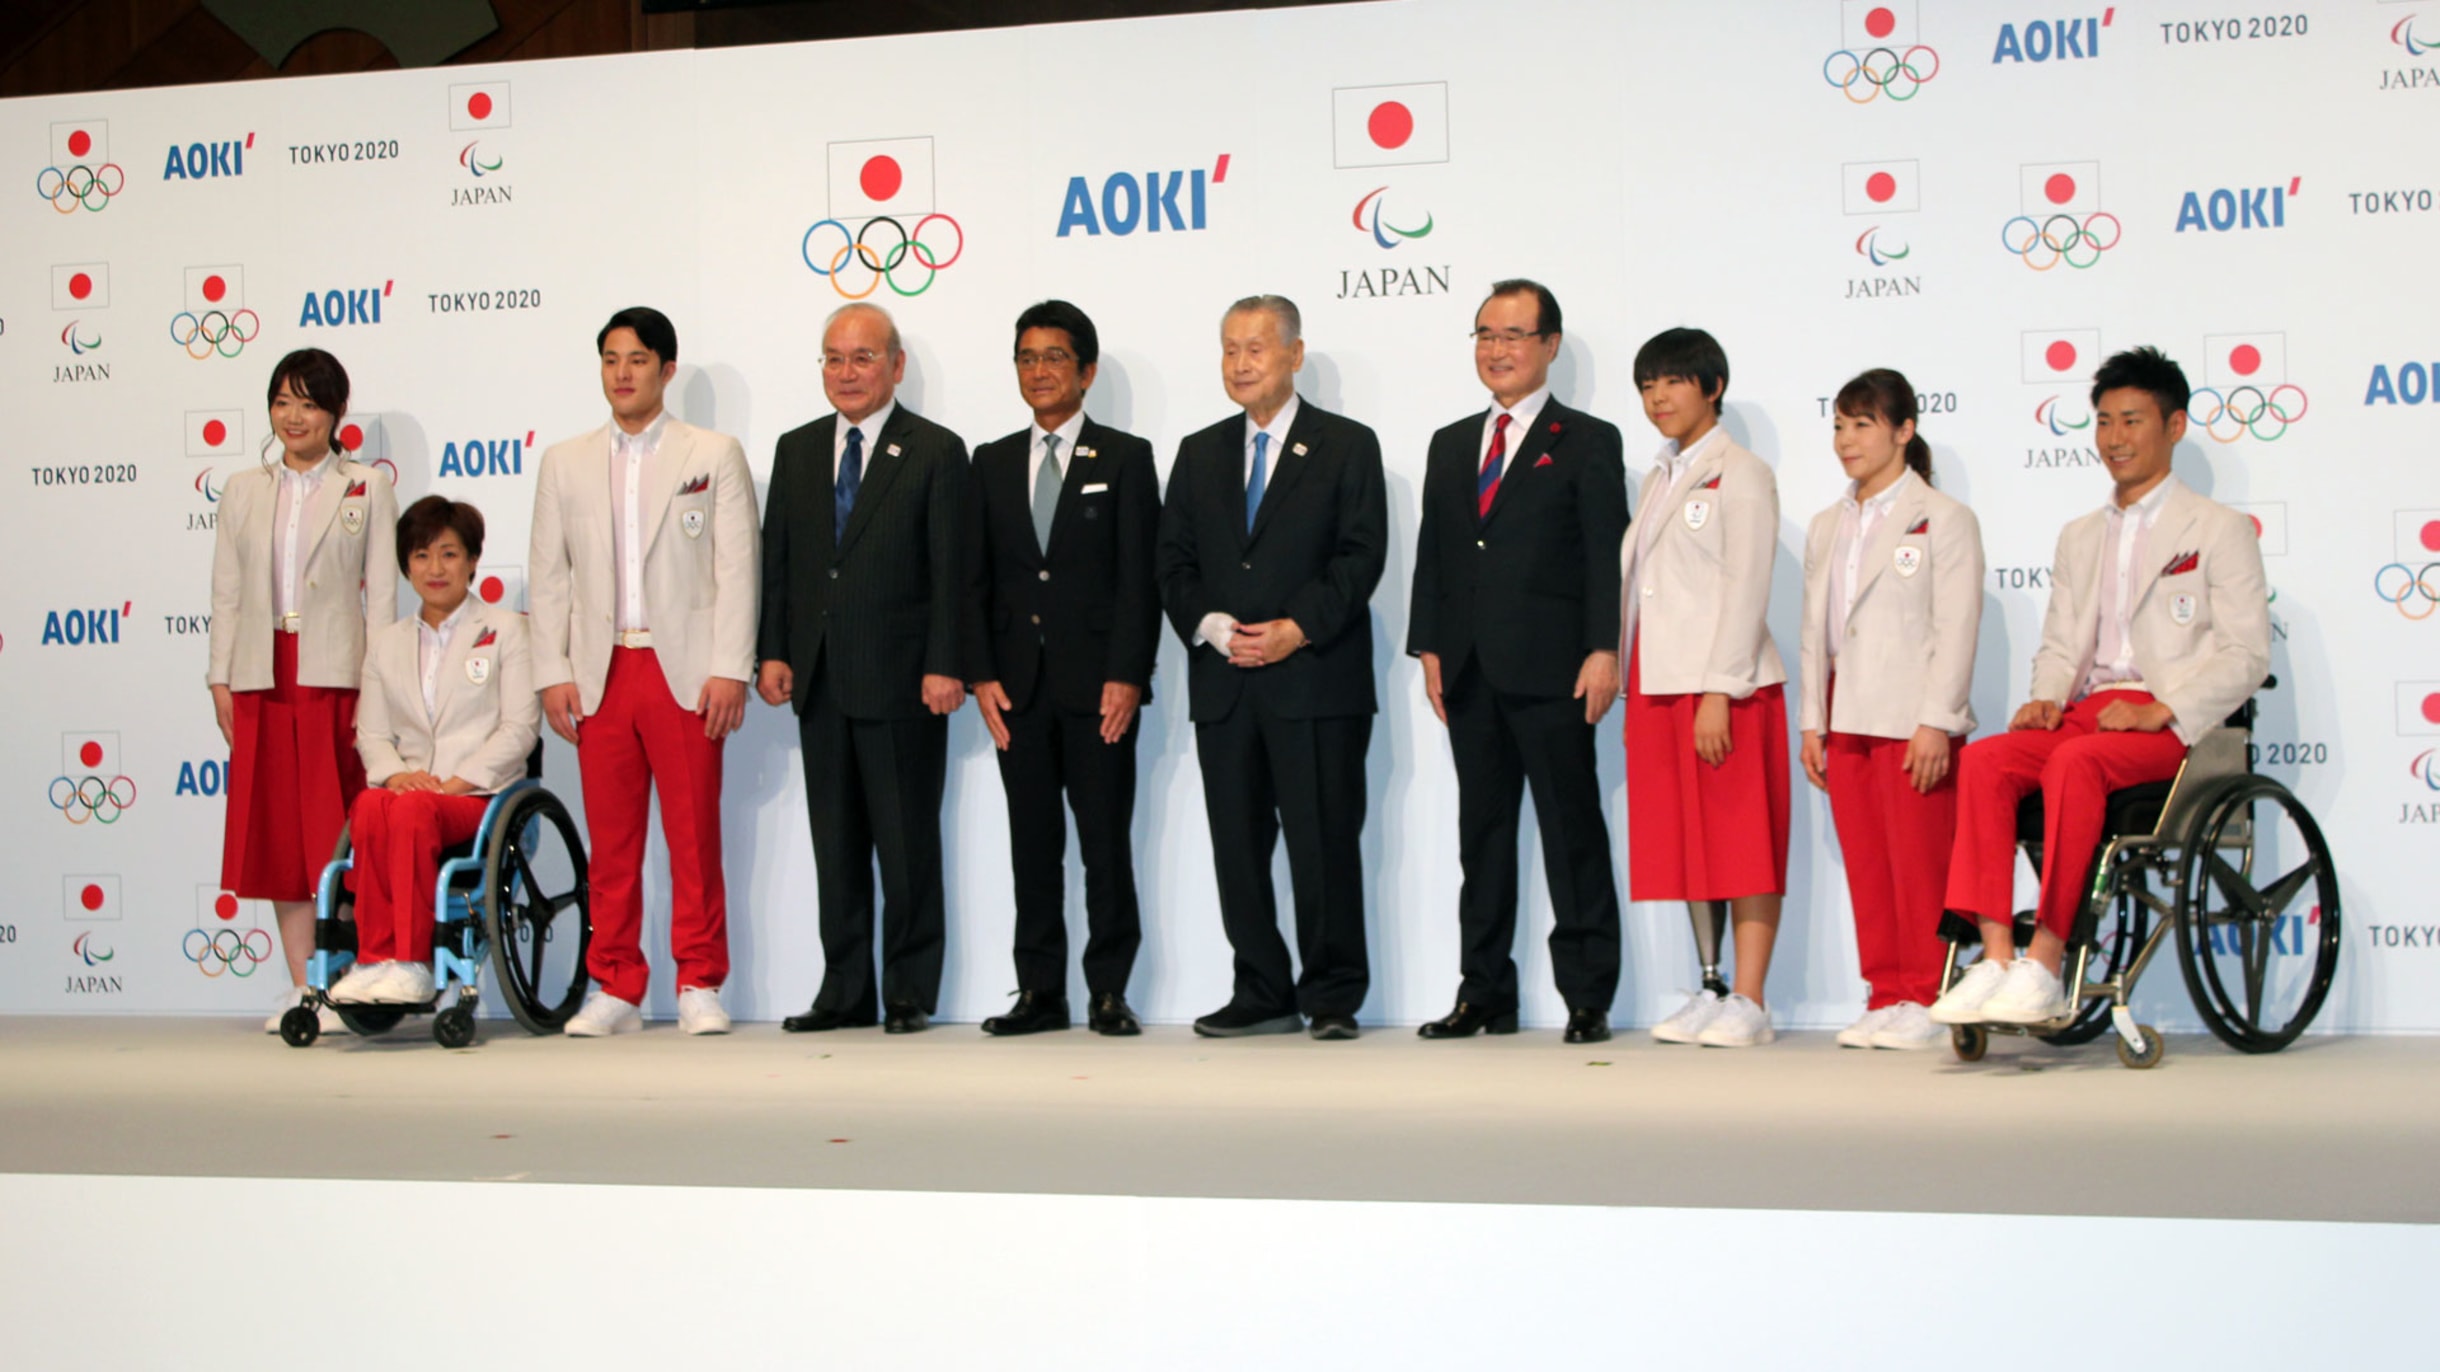 日本代表選手団公式服装・テクニカルオフィシャルユニフォームを発表